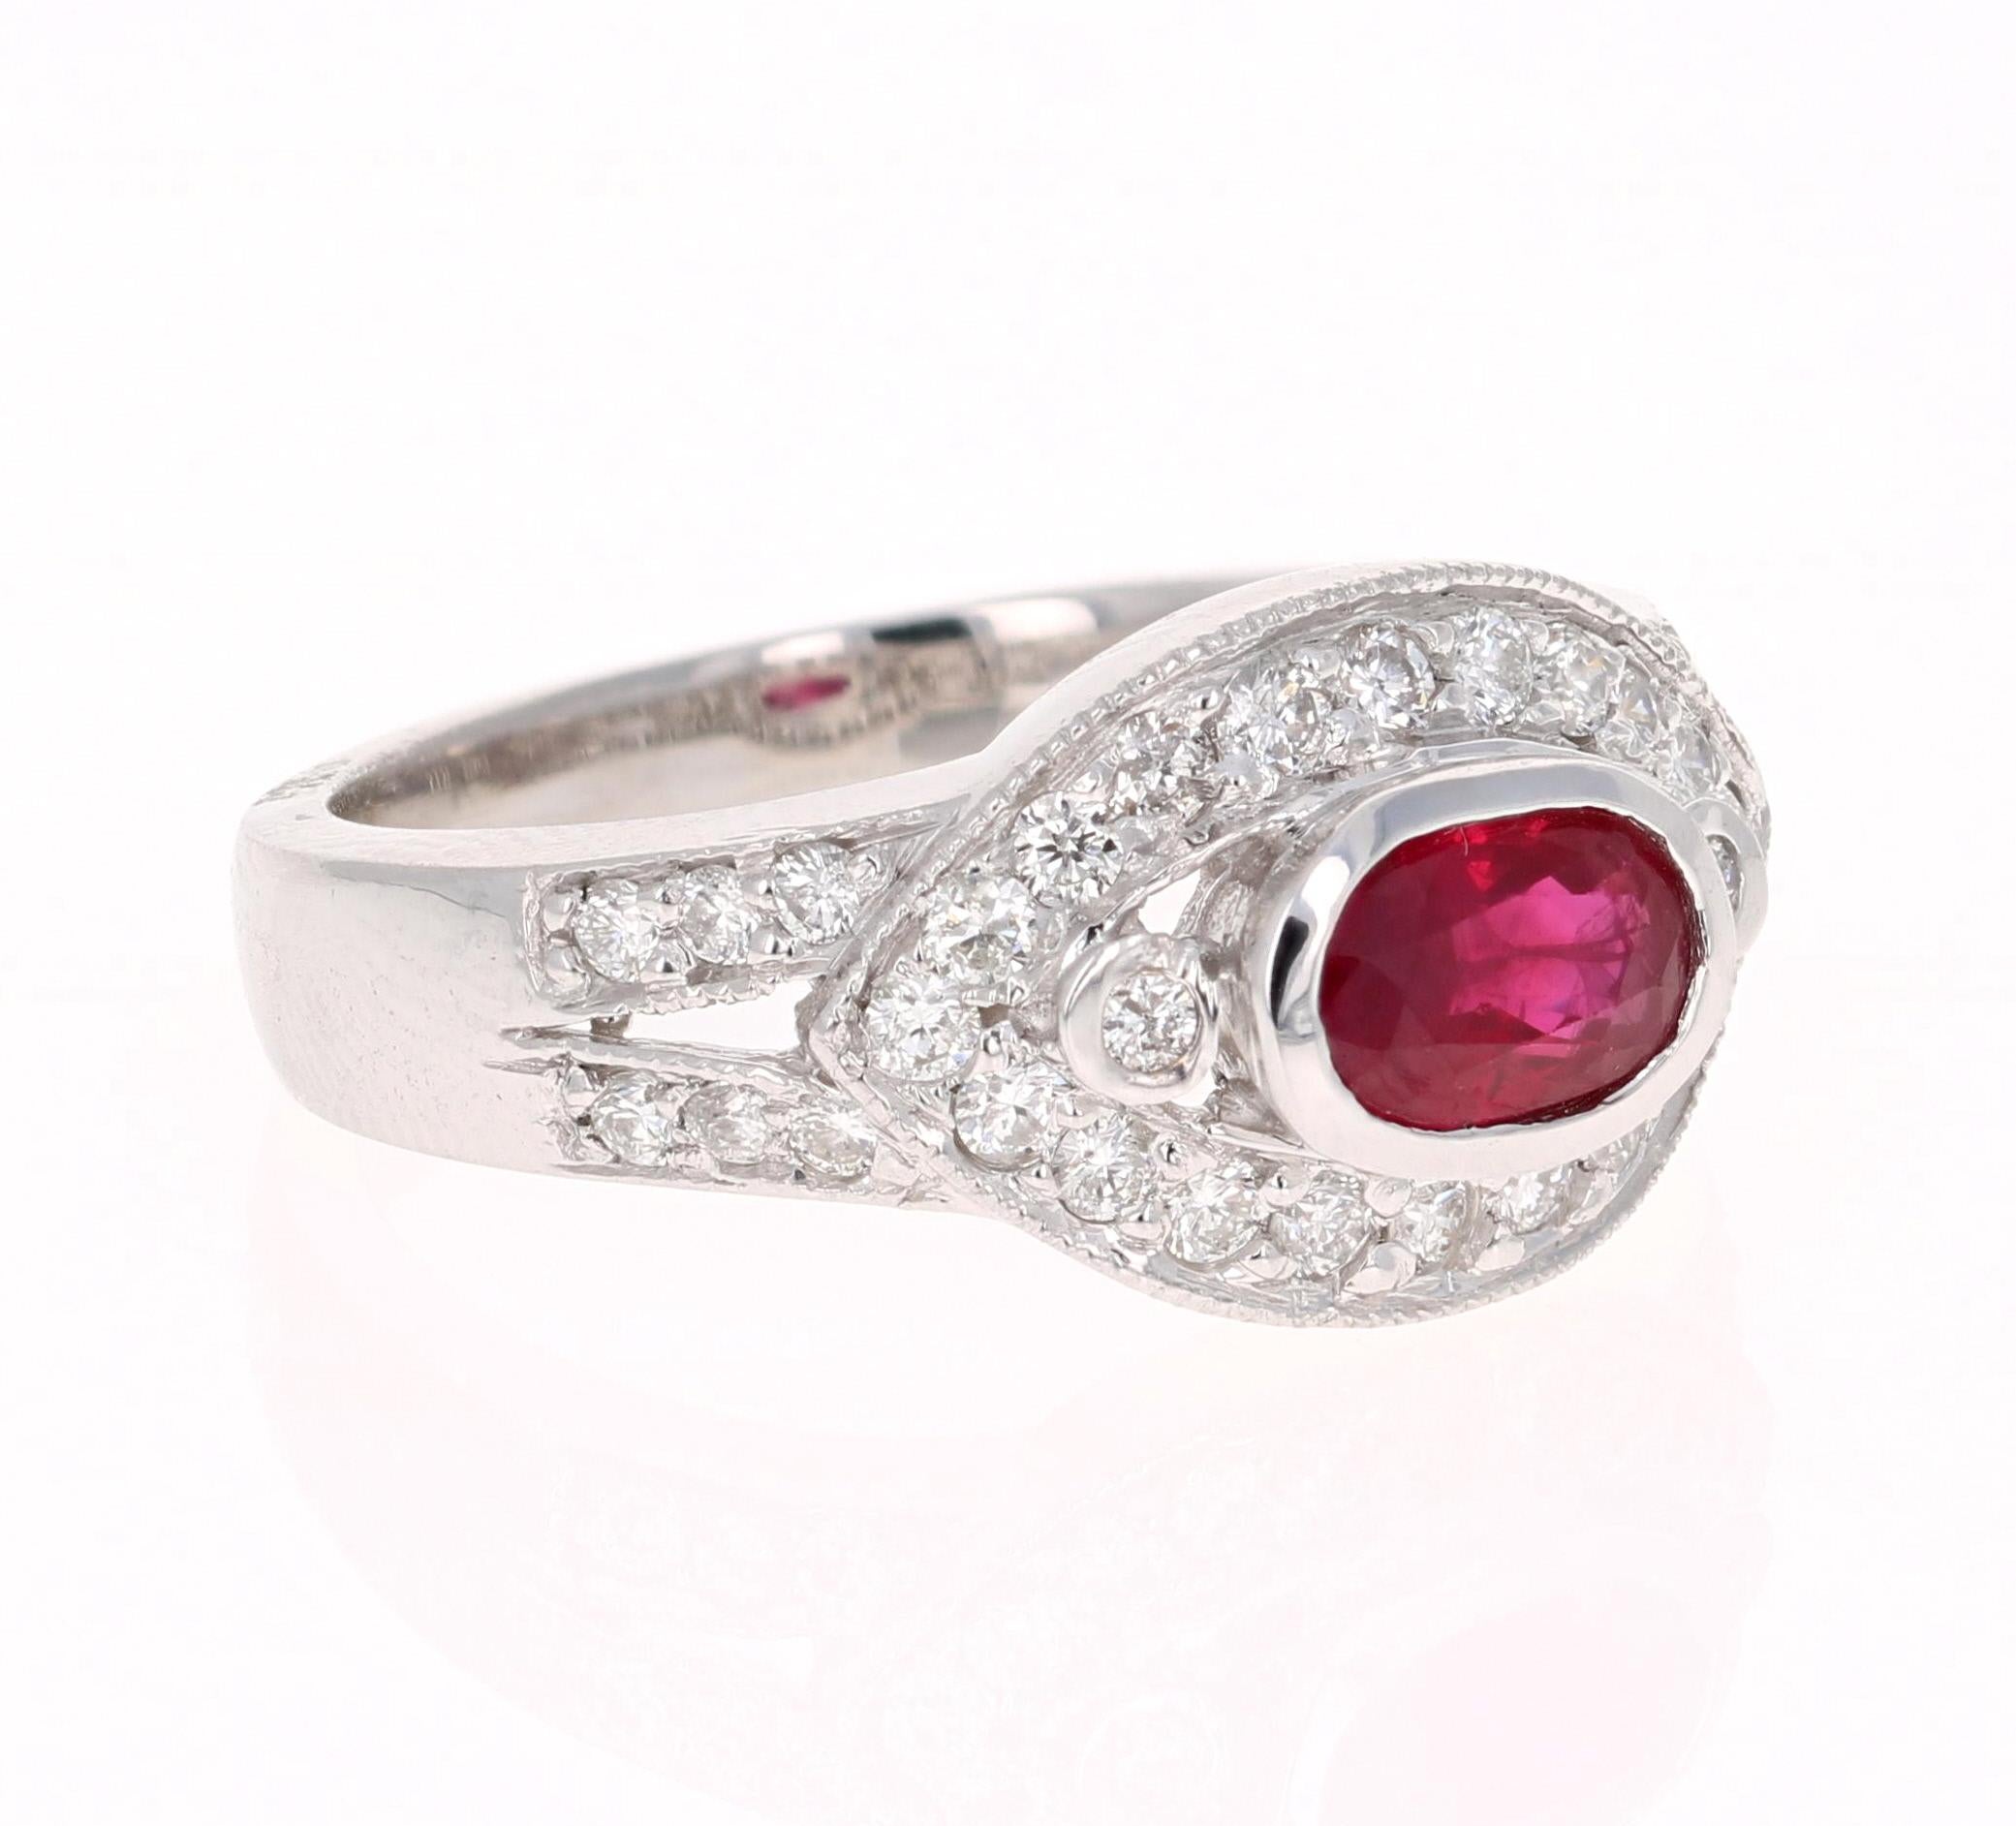 Einfach schöner Rubin-Diamant-Ring mit einem burmesischen Rubin im Ovalschliff von 0,92 Karat, der von 34 Diamanten im Rundschliff mit einem Gewicht von 0,59 Karat umgeben ist. Das Gesamtkaratgewicht des Rings beträgt 1,51 Karat. Die Reinheit und